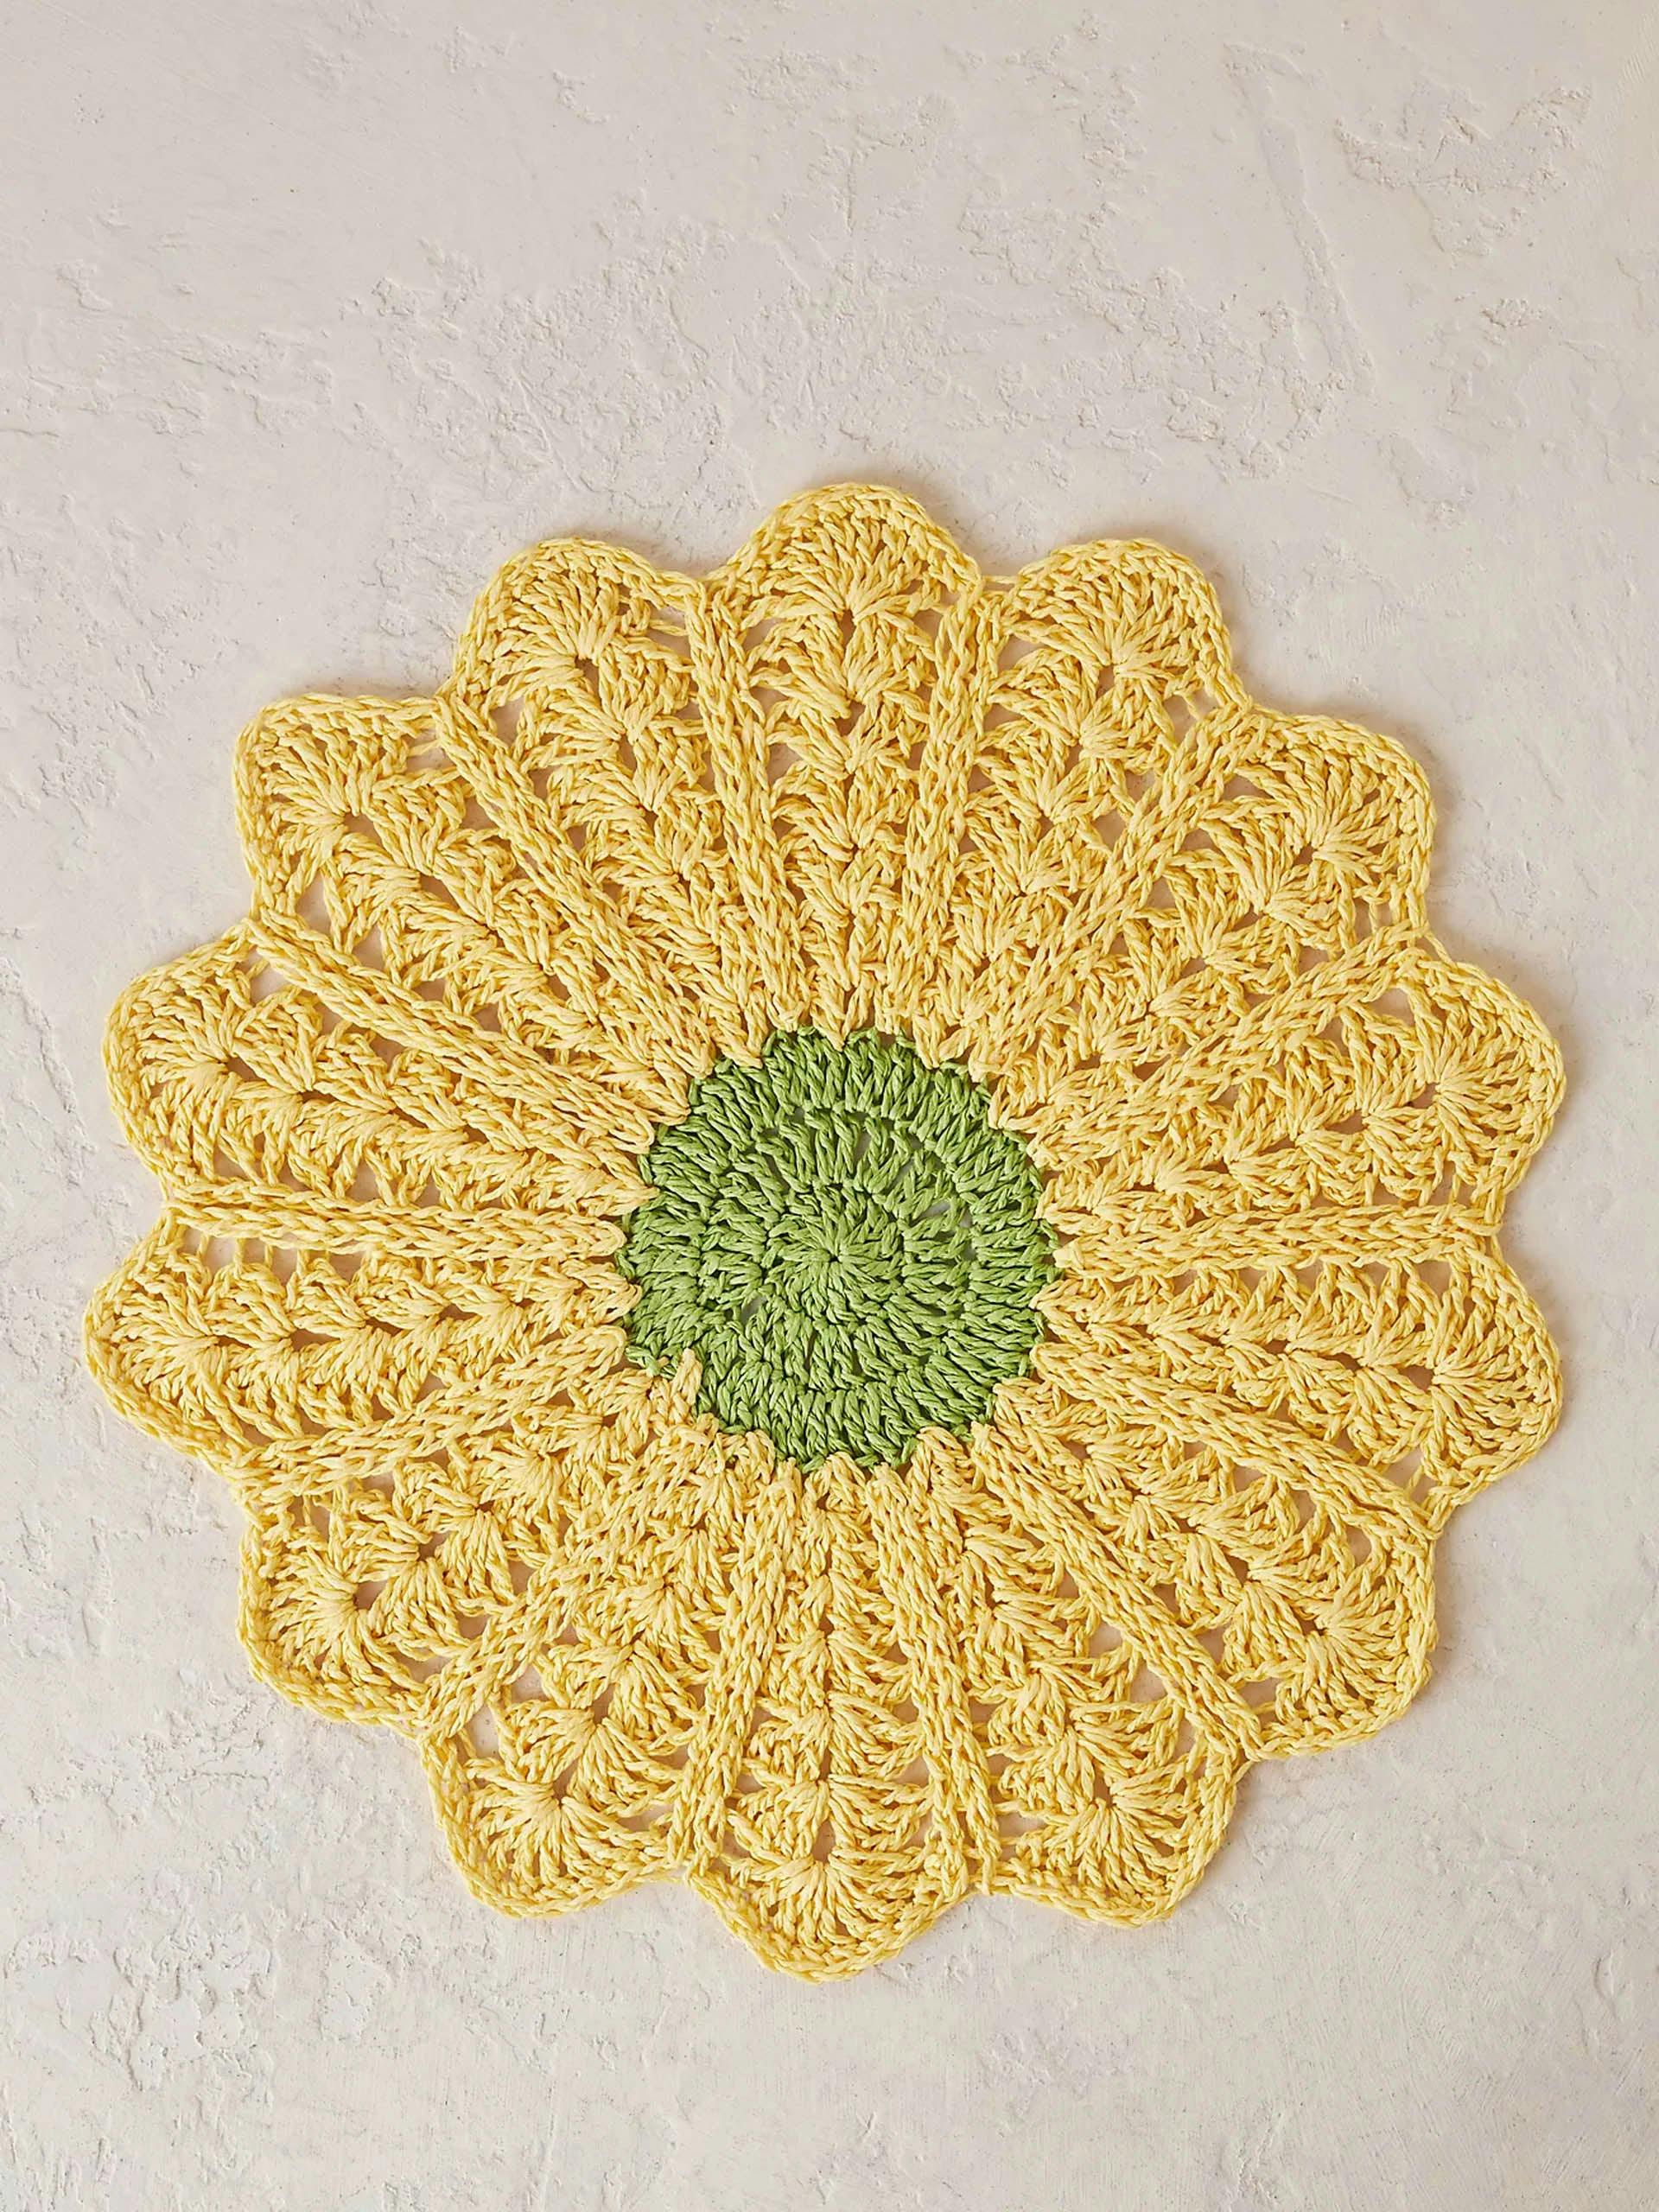 Crochet flower placemat